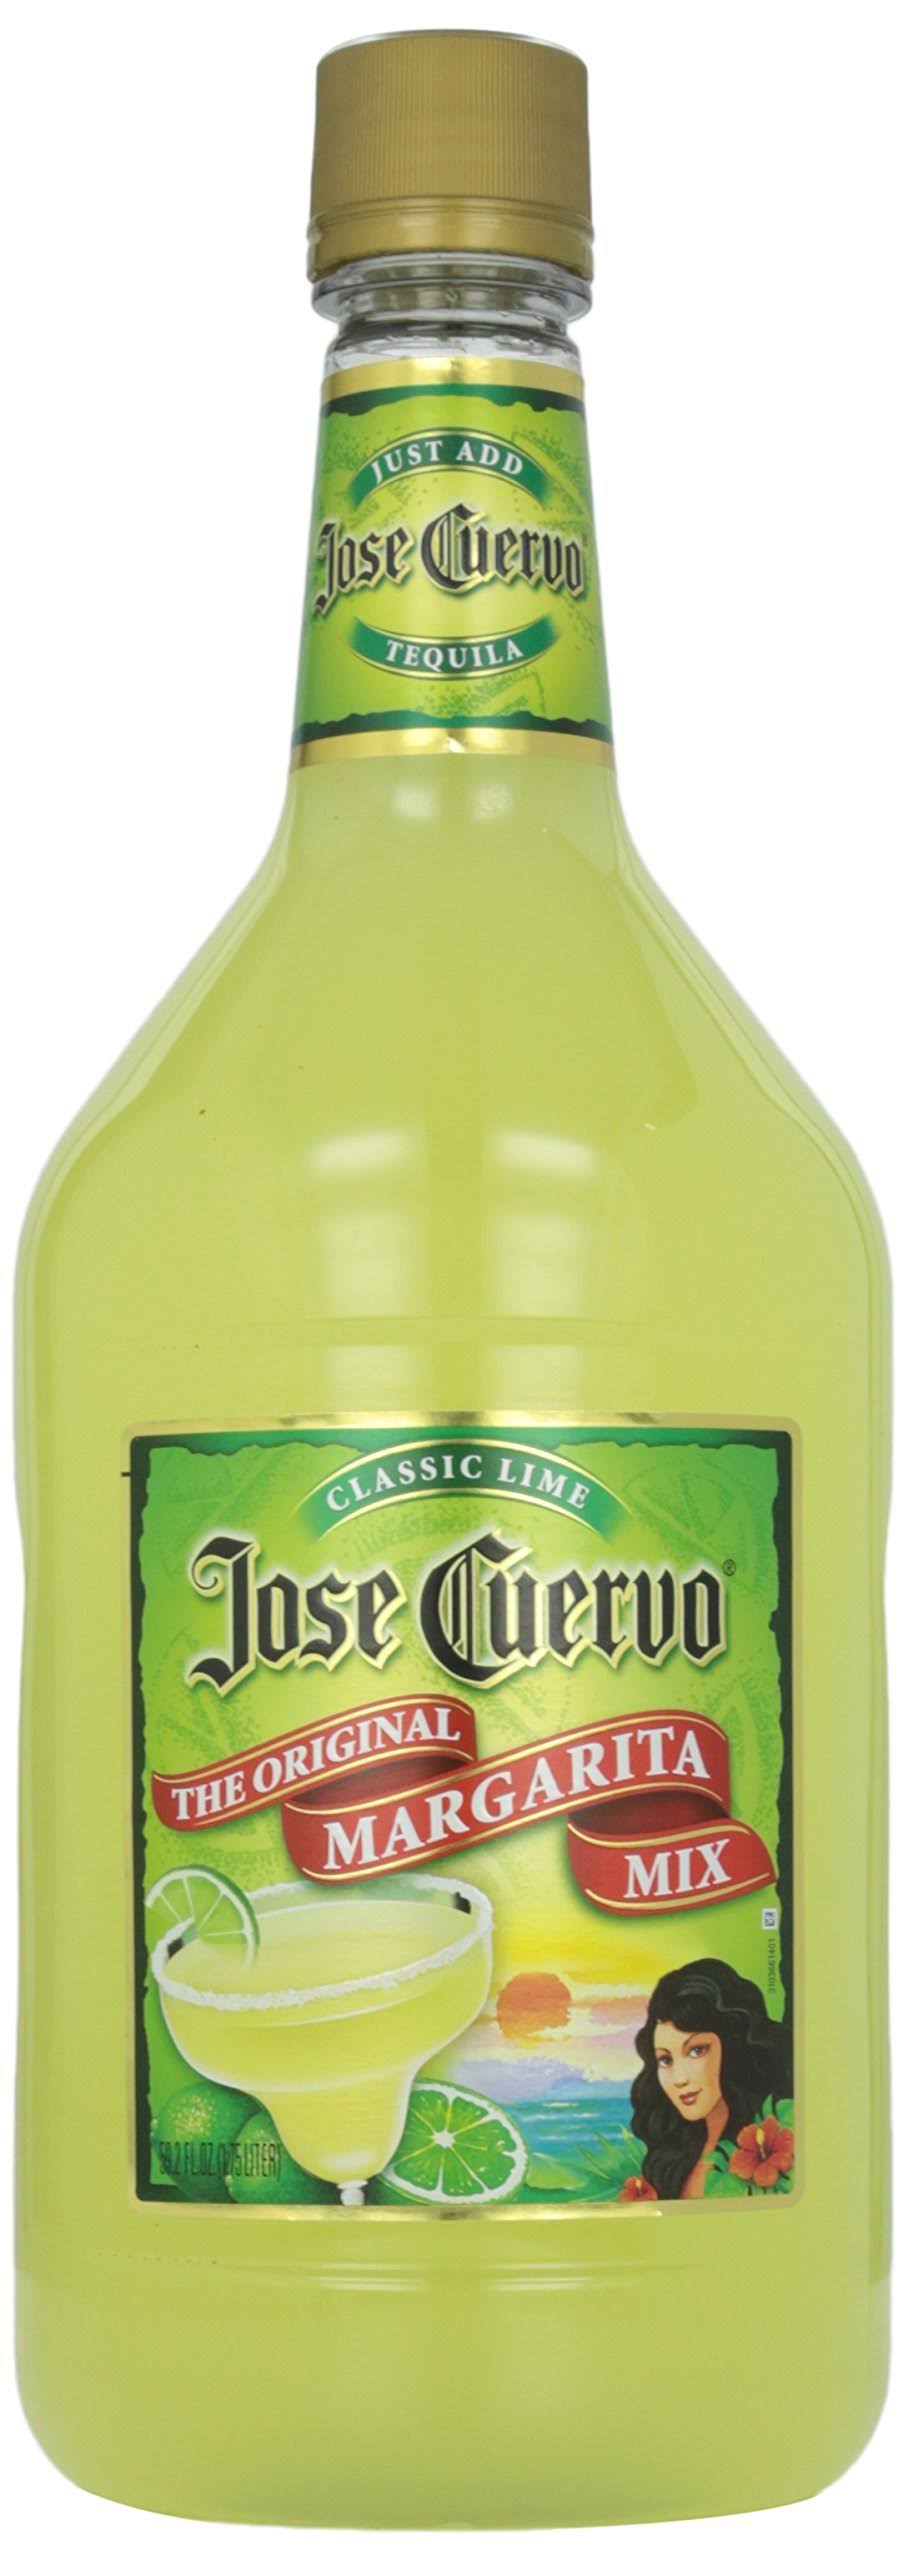 Best Jose Cuervo Margarita Mix - Classic Lime, 1.75l